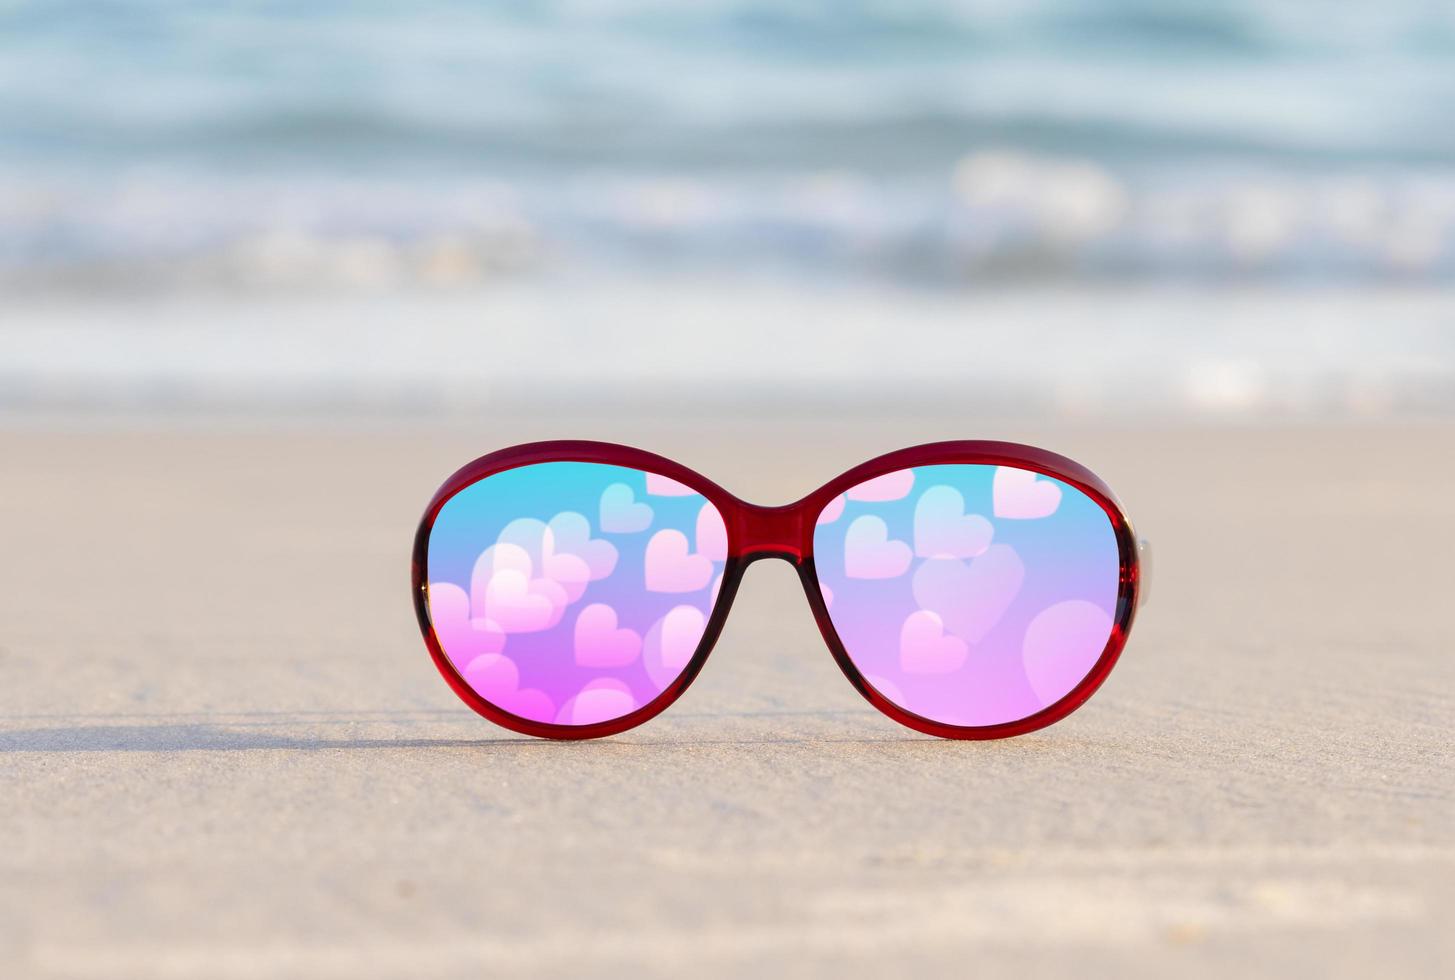 occhiali da sole sulla sabbia bellissima spiaggia estiva e un cuore rosa per San Valentino foto